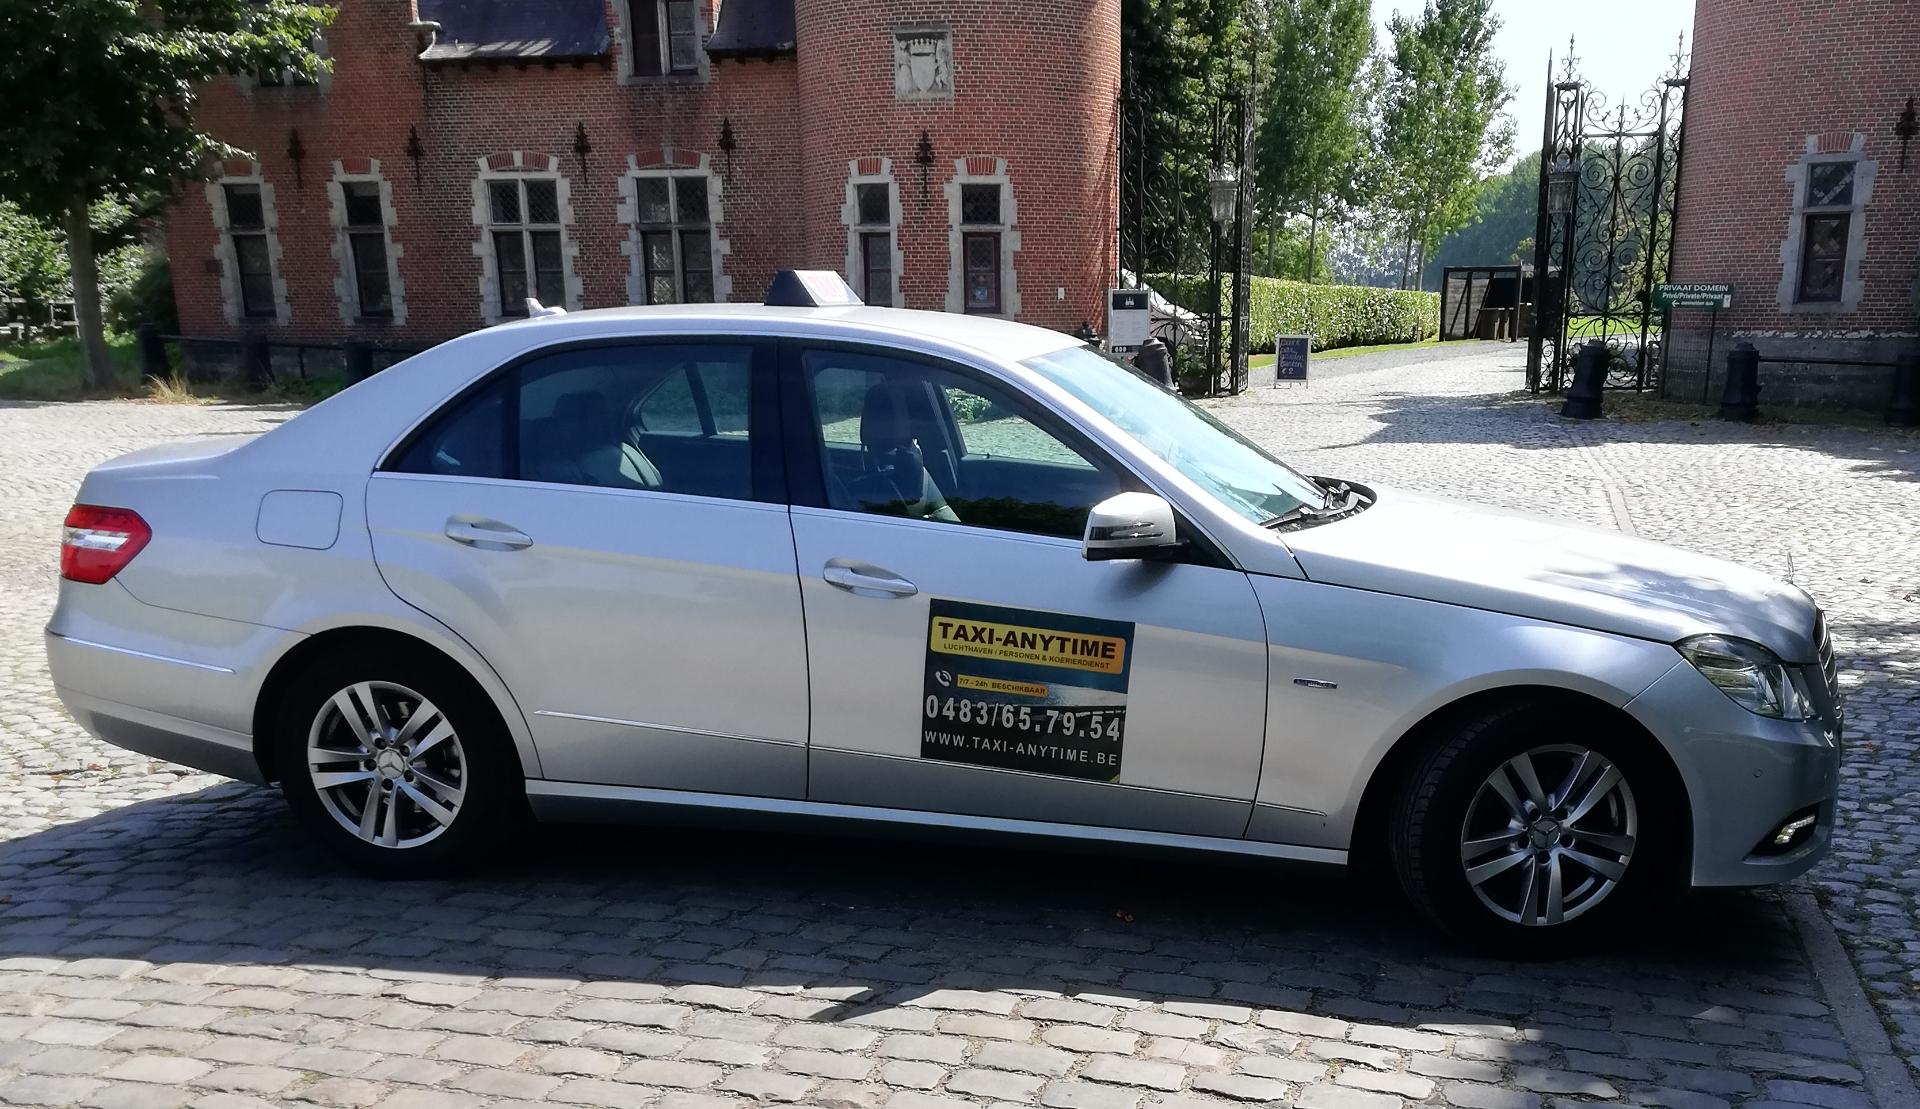 taxibedrijven Wondelgem Taxi Anytime